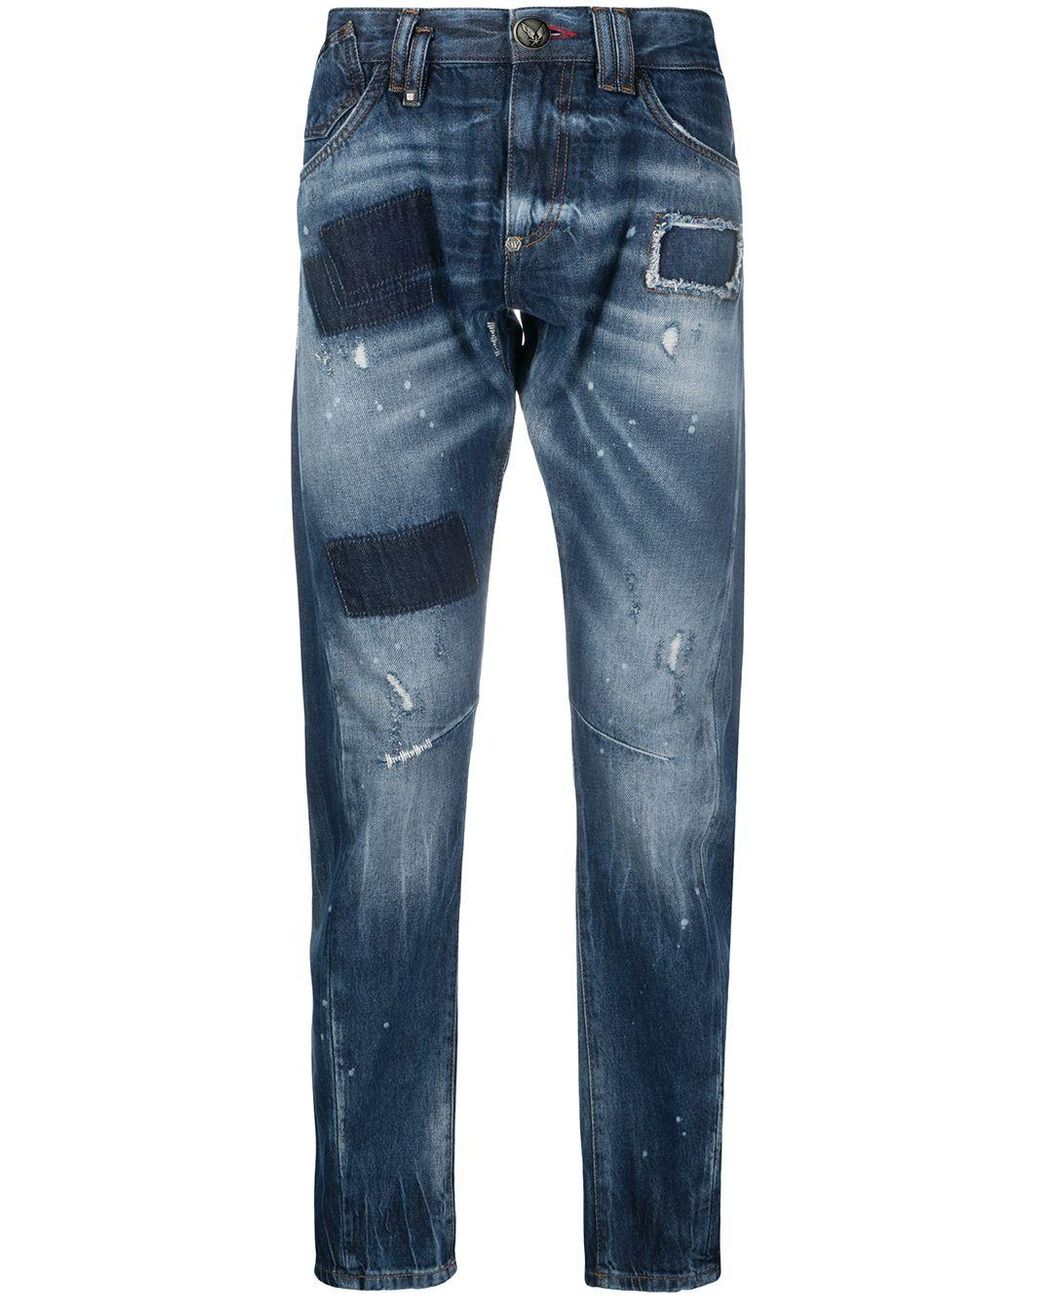 Philipp Plein Denim Skull On Fire Slim-fit Jeans in Blue for Men - Lyst